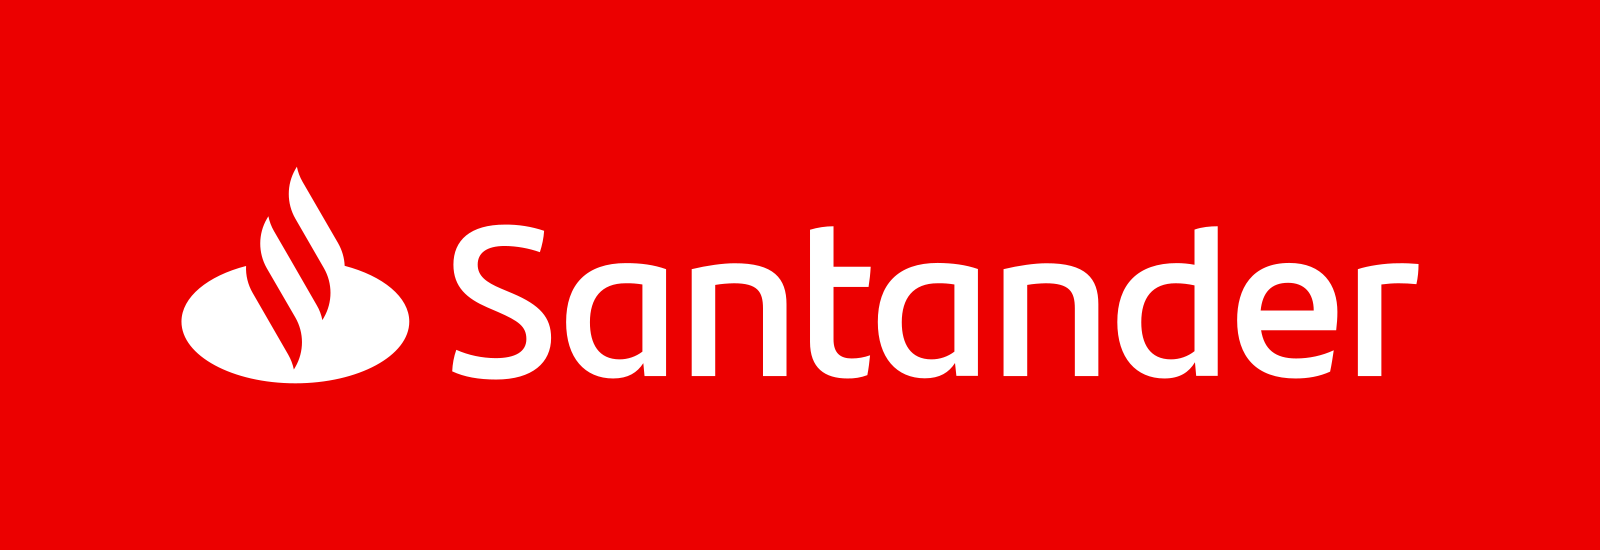 santander logo 5 - Santander Logo